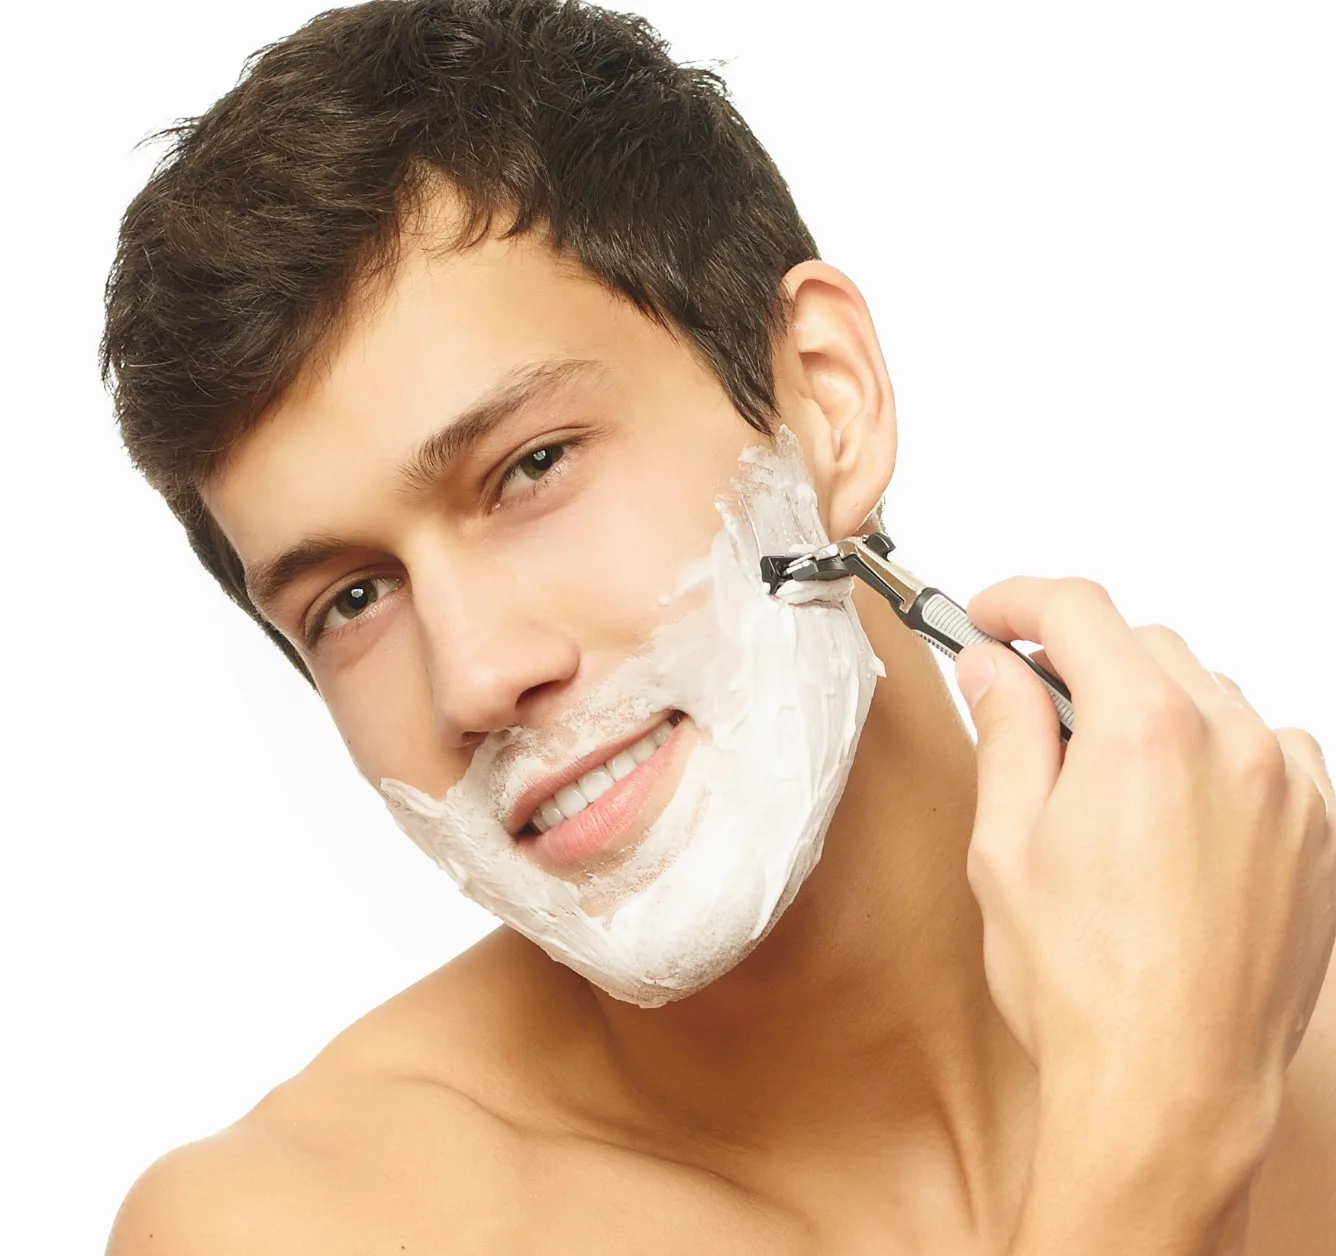 Melhore a sua experiência de barbear com as lâminas Gillette